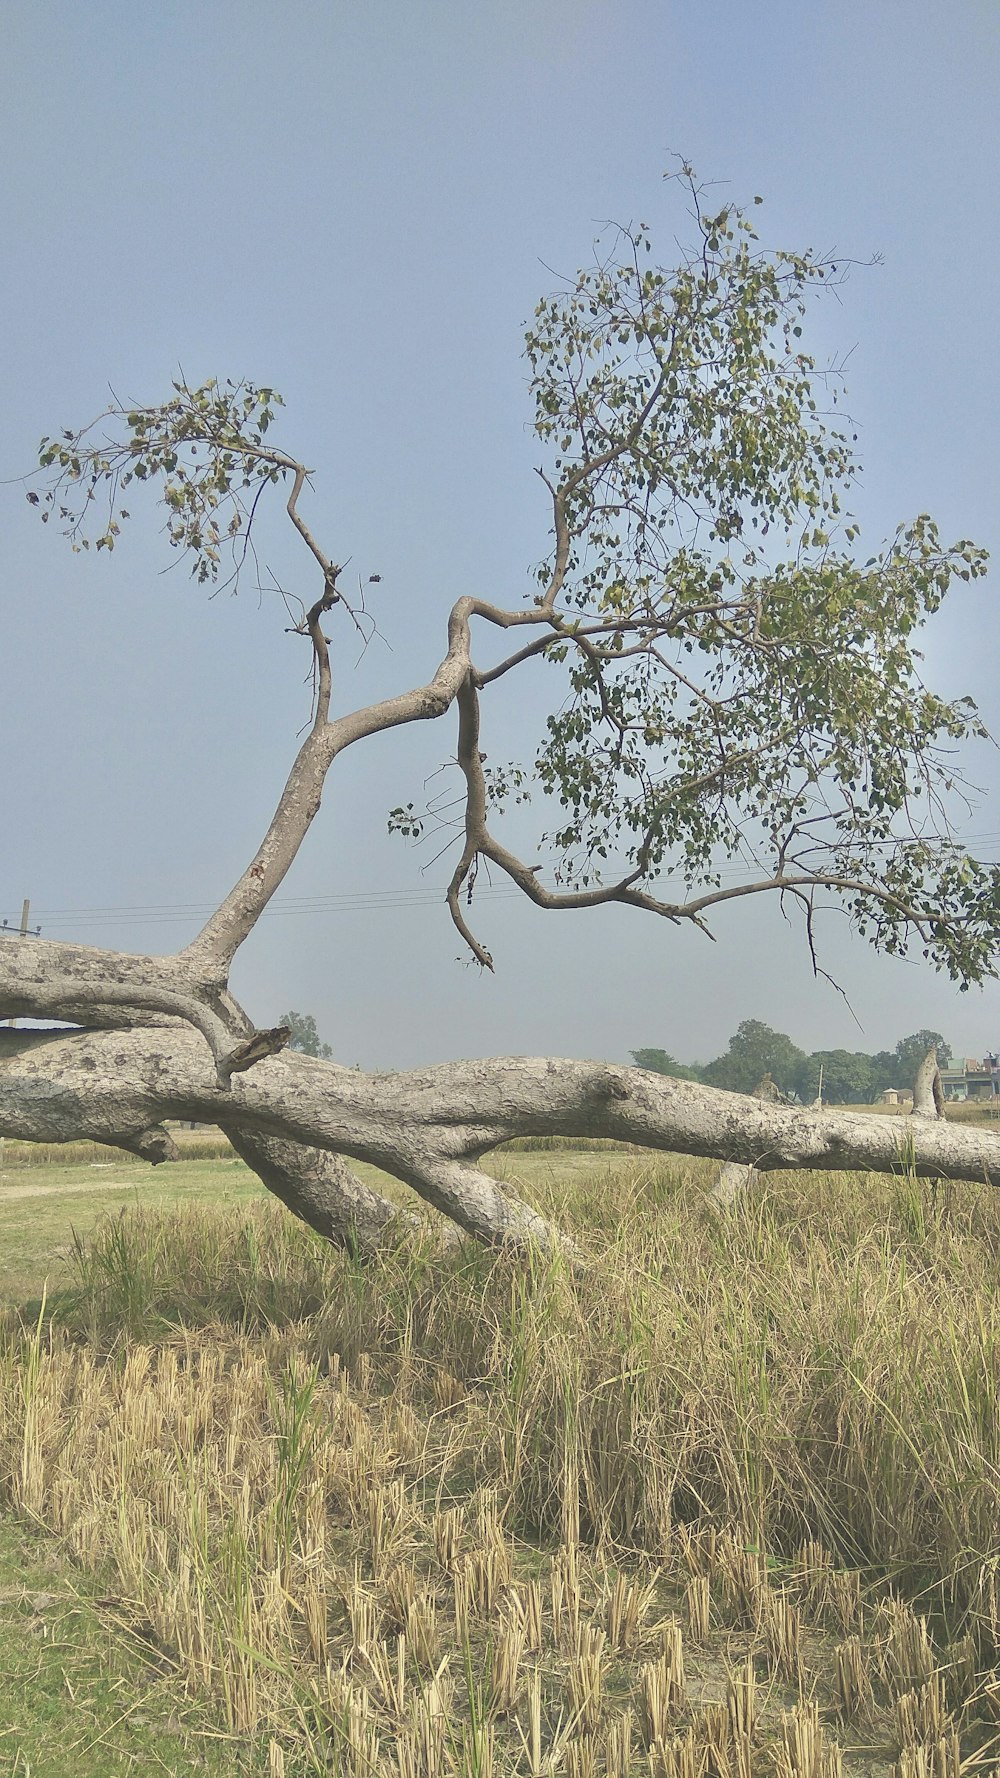 a giraffe standing next to a fallen tree